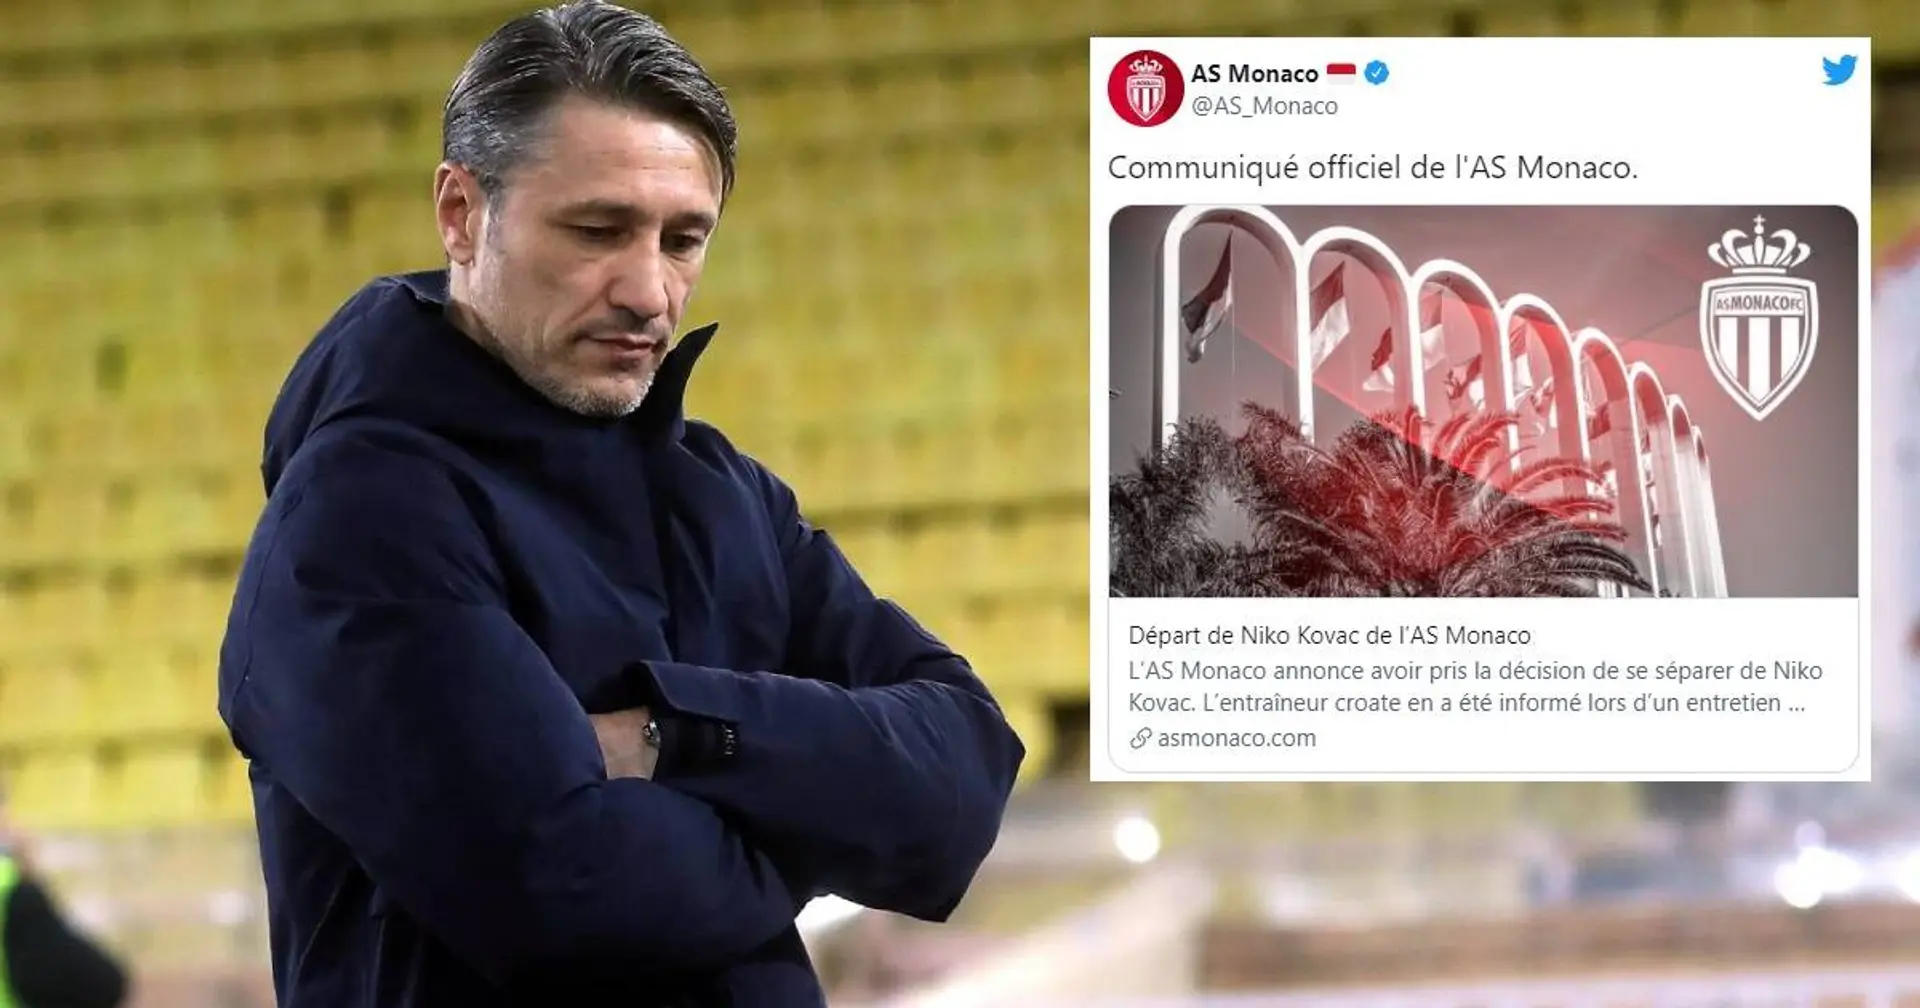 Offiziell: Ex-Bayern-Trainer Niko Kovac wurde bei der AS Monaco entlassen